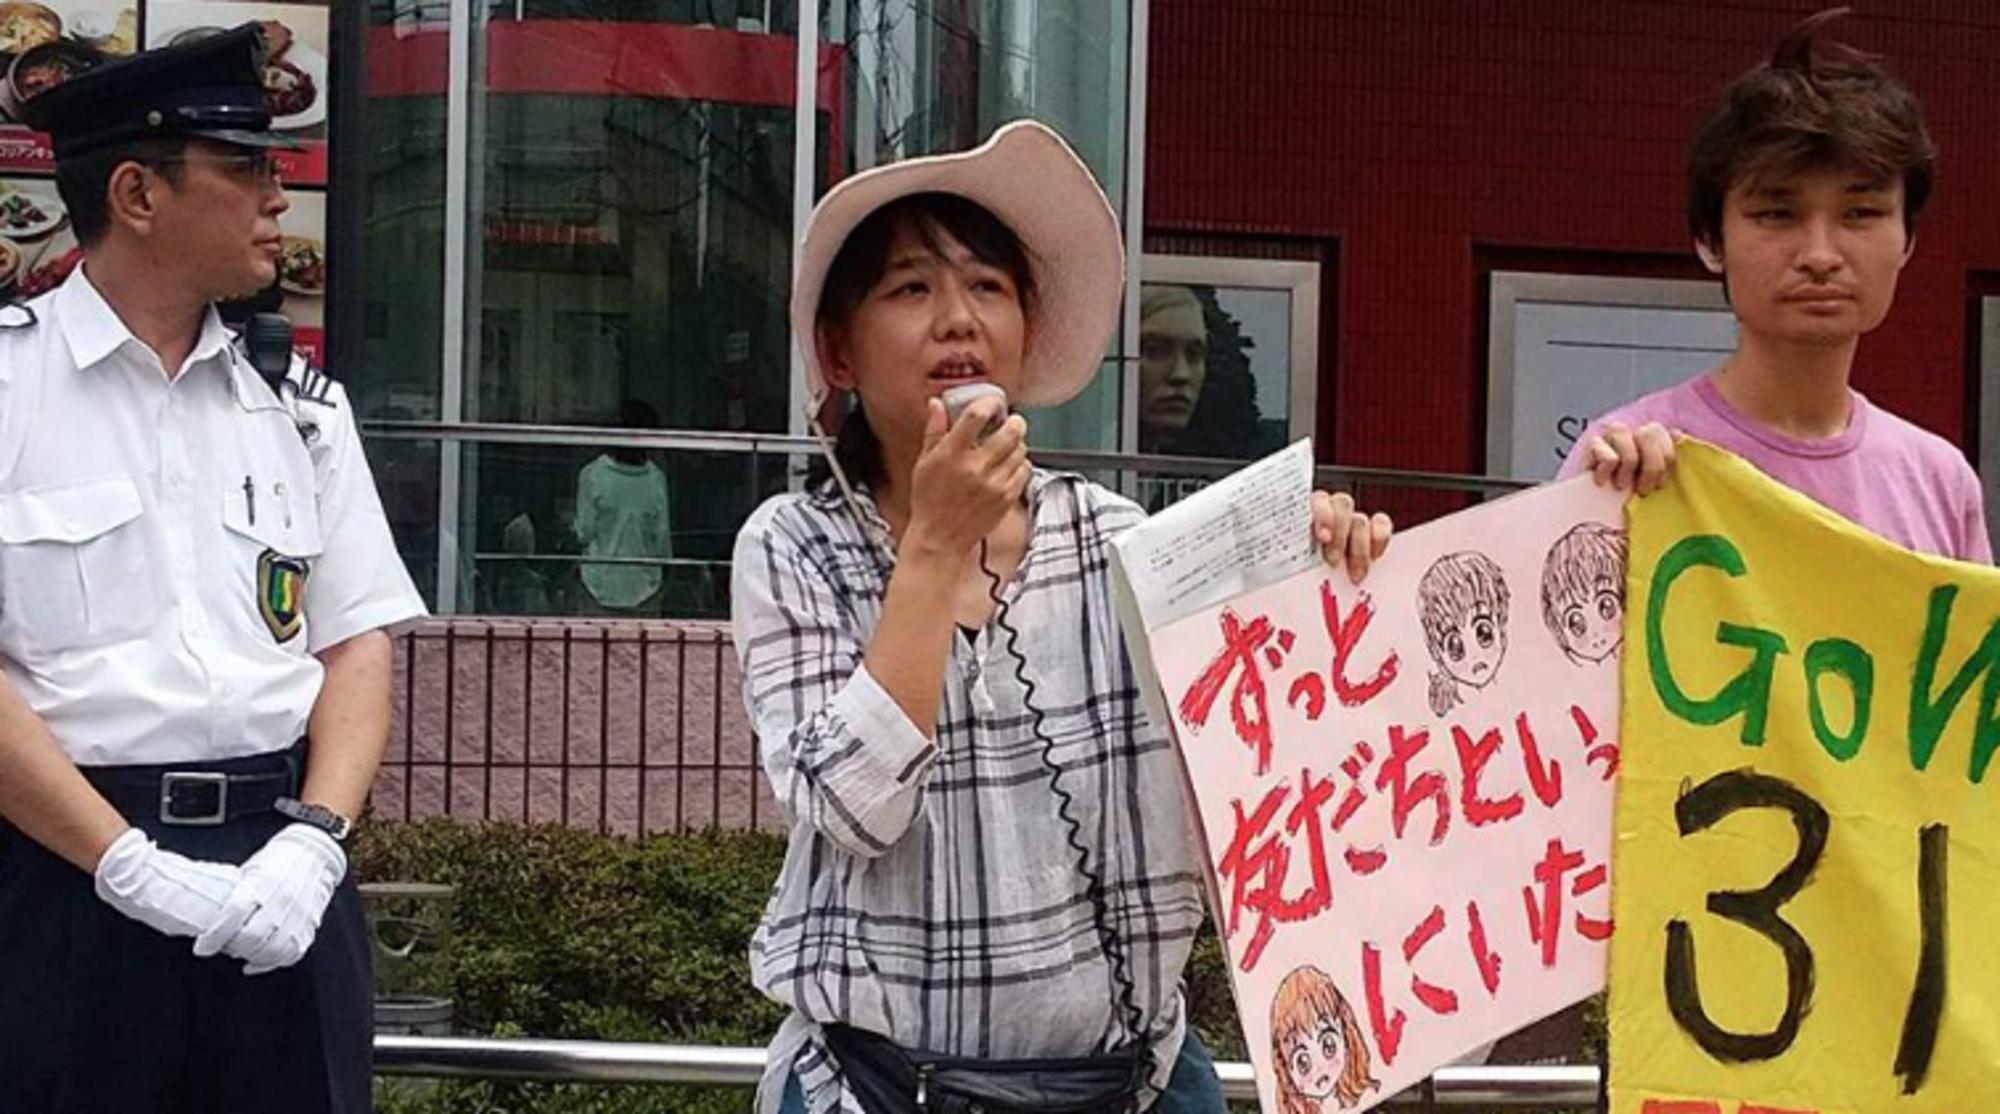 Las madres japonesas afectadas por la catástrofe nuclear de Fukushima conocen de primera mano sus efectos, algo que los trolls pro-nucleares no conocen. Fuente: Beyond Nuclear International